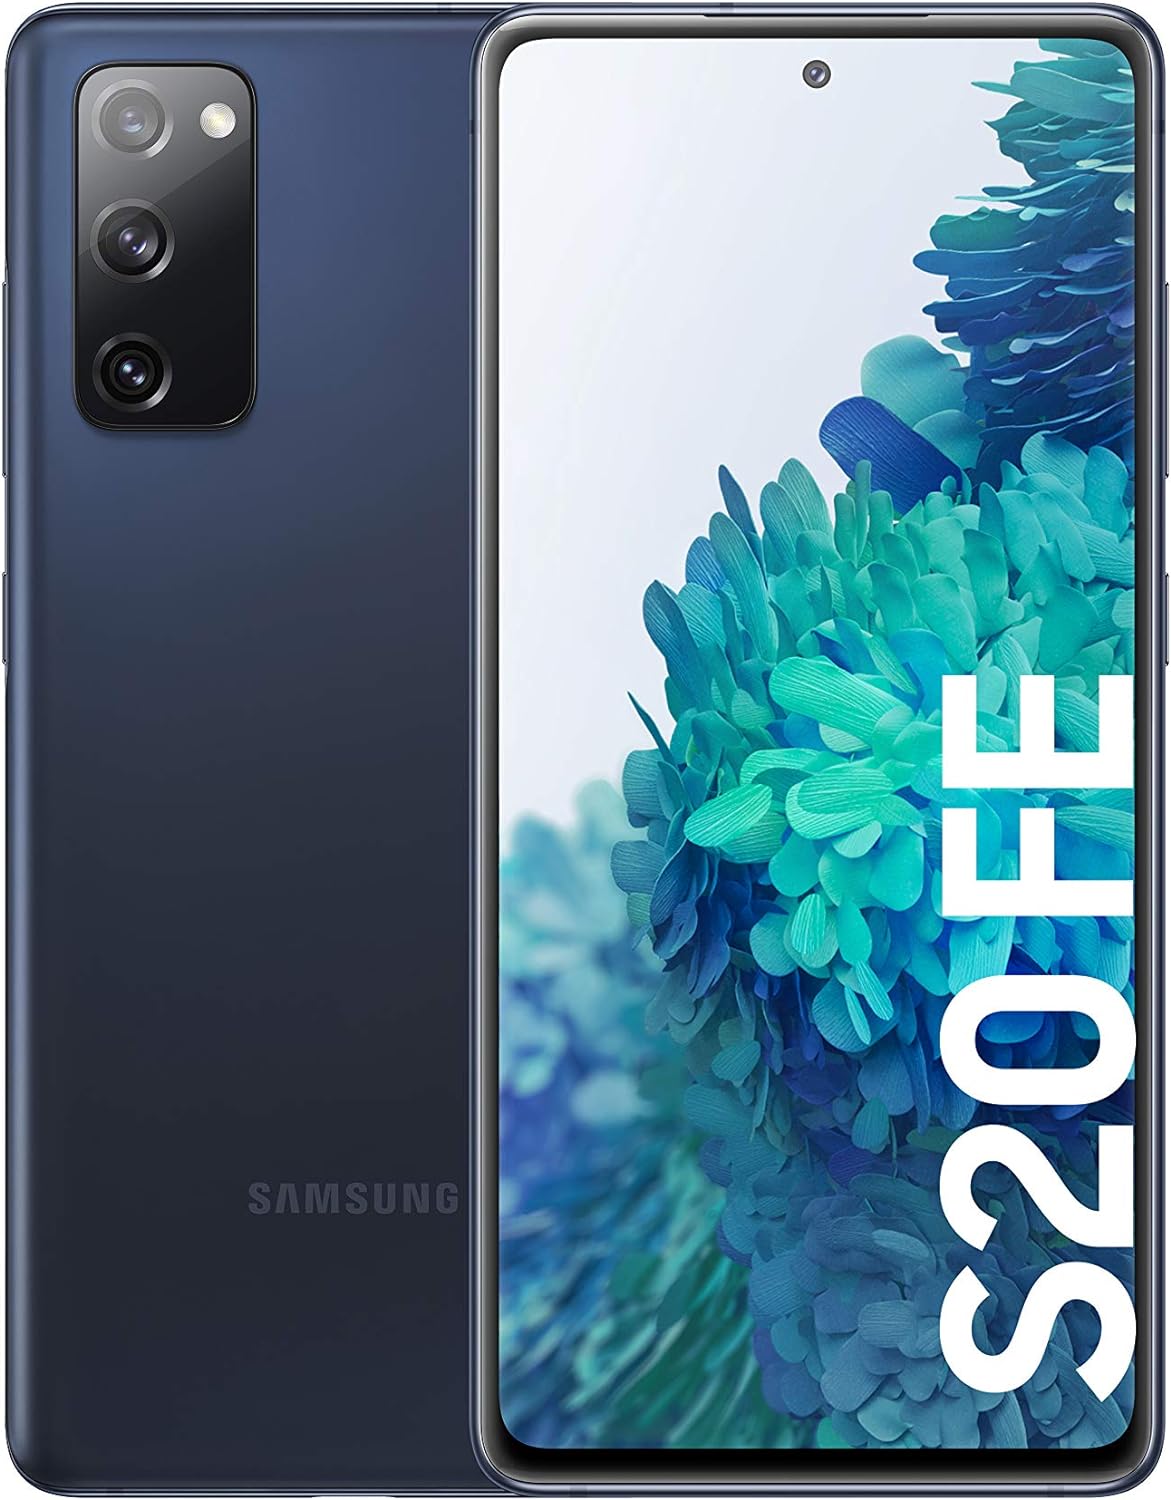 Samsung Galaxy S20 Fe (G780f/ds) 128gb [Dual-Sim] Cloud Navy